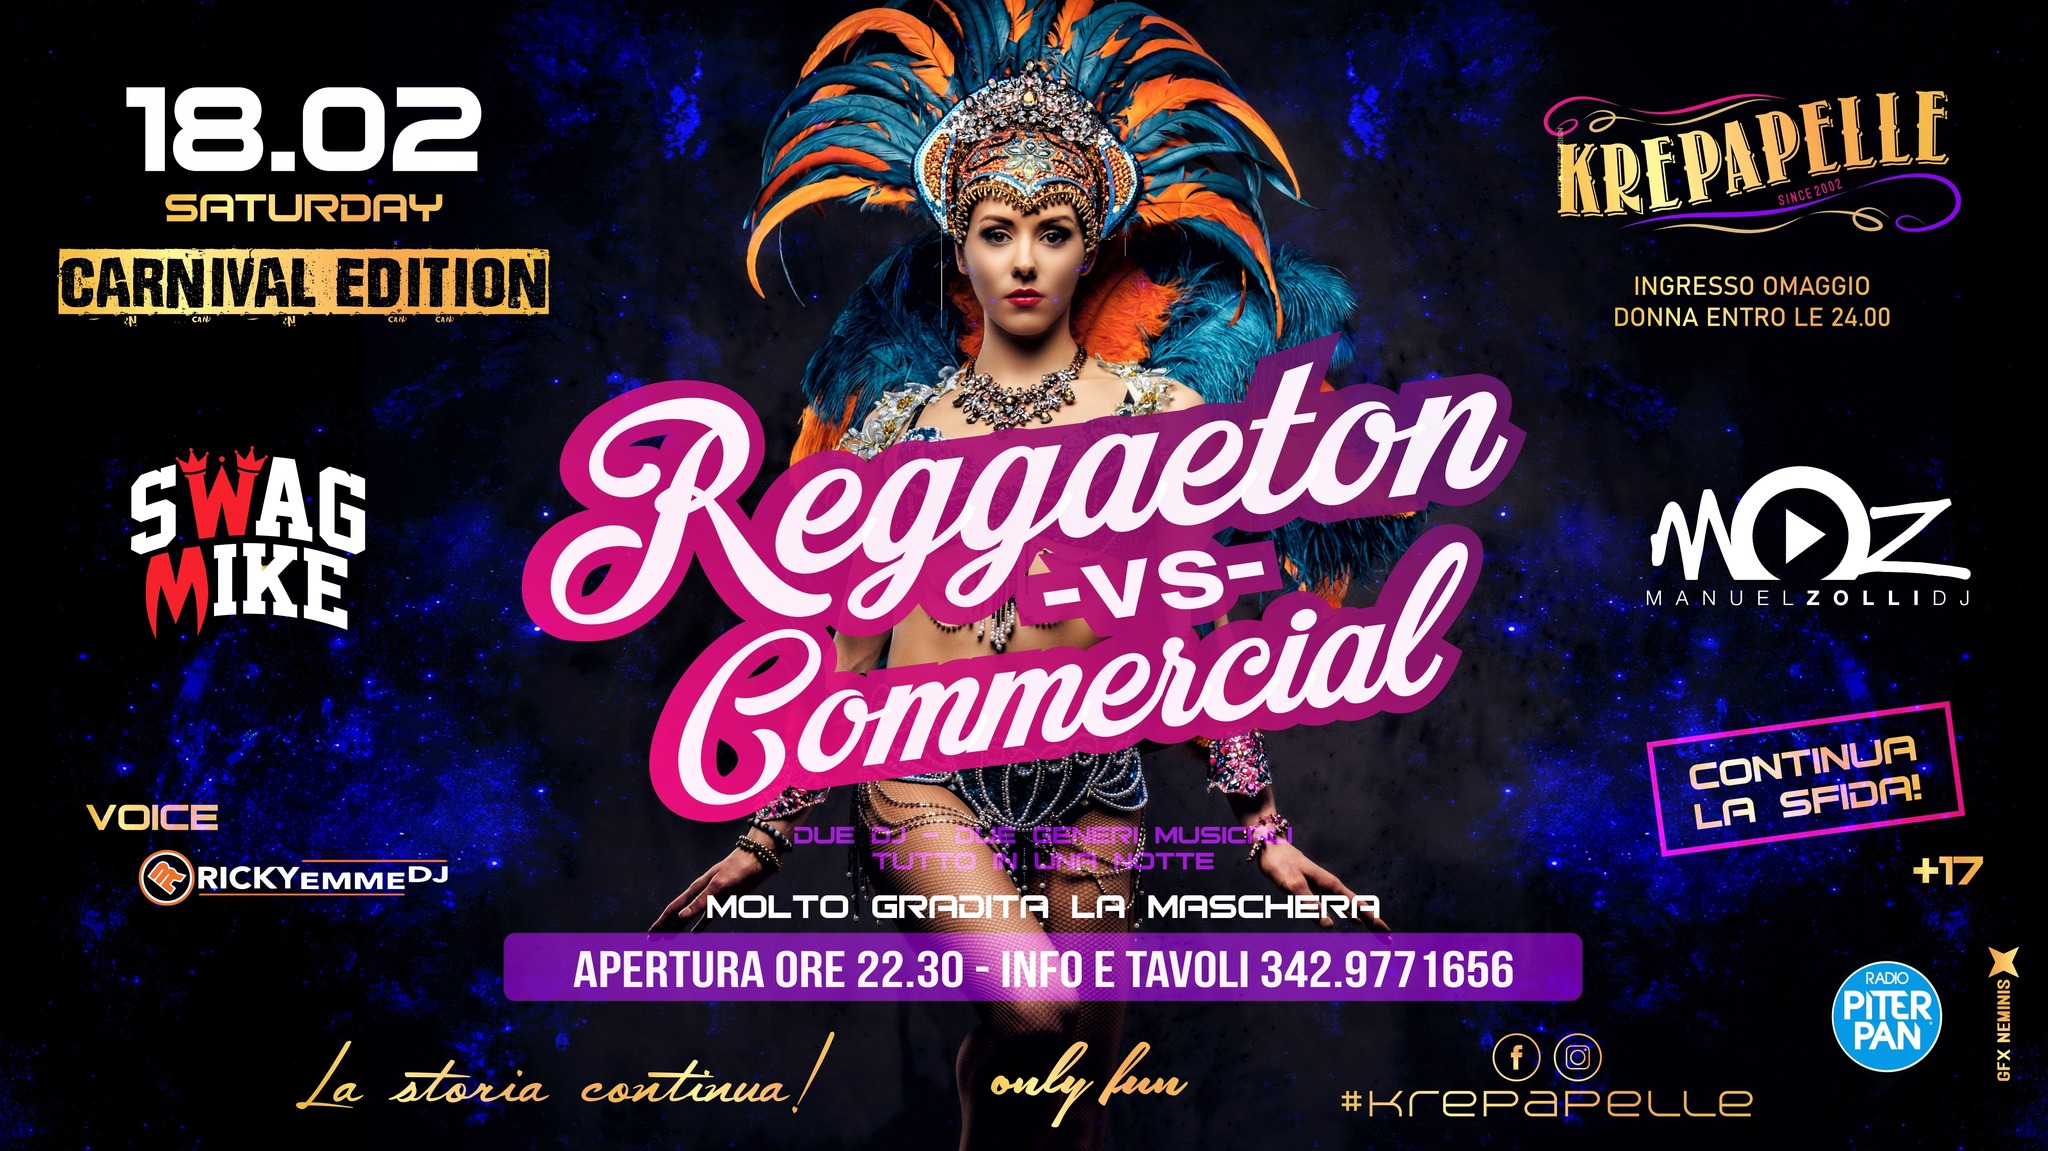 KREPAPELLE, Reggaeton vs Commercial, CARNIVAL Edition